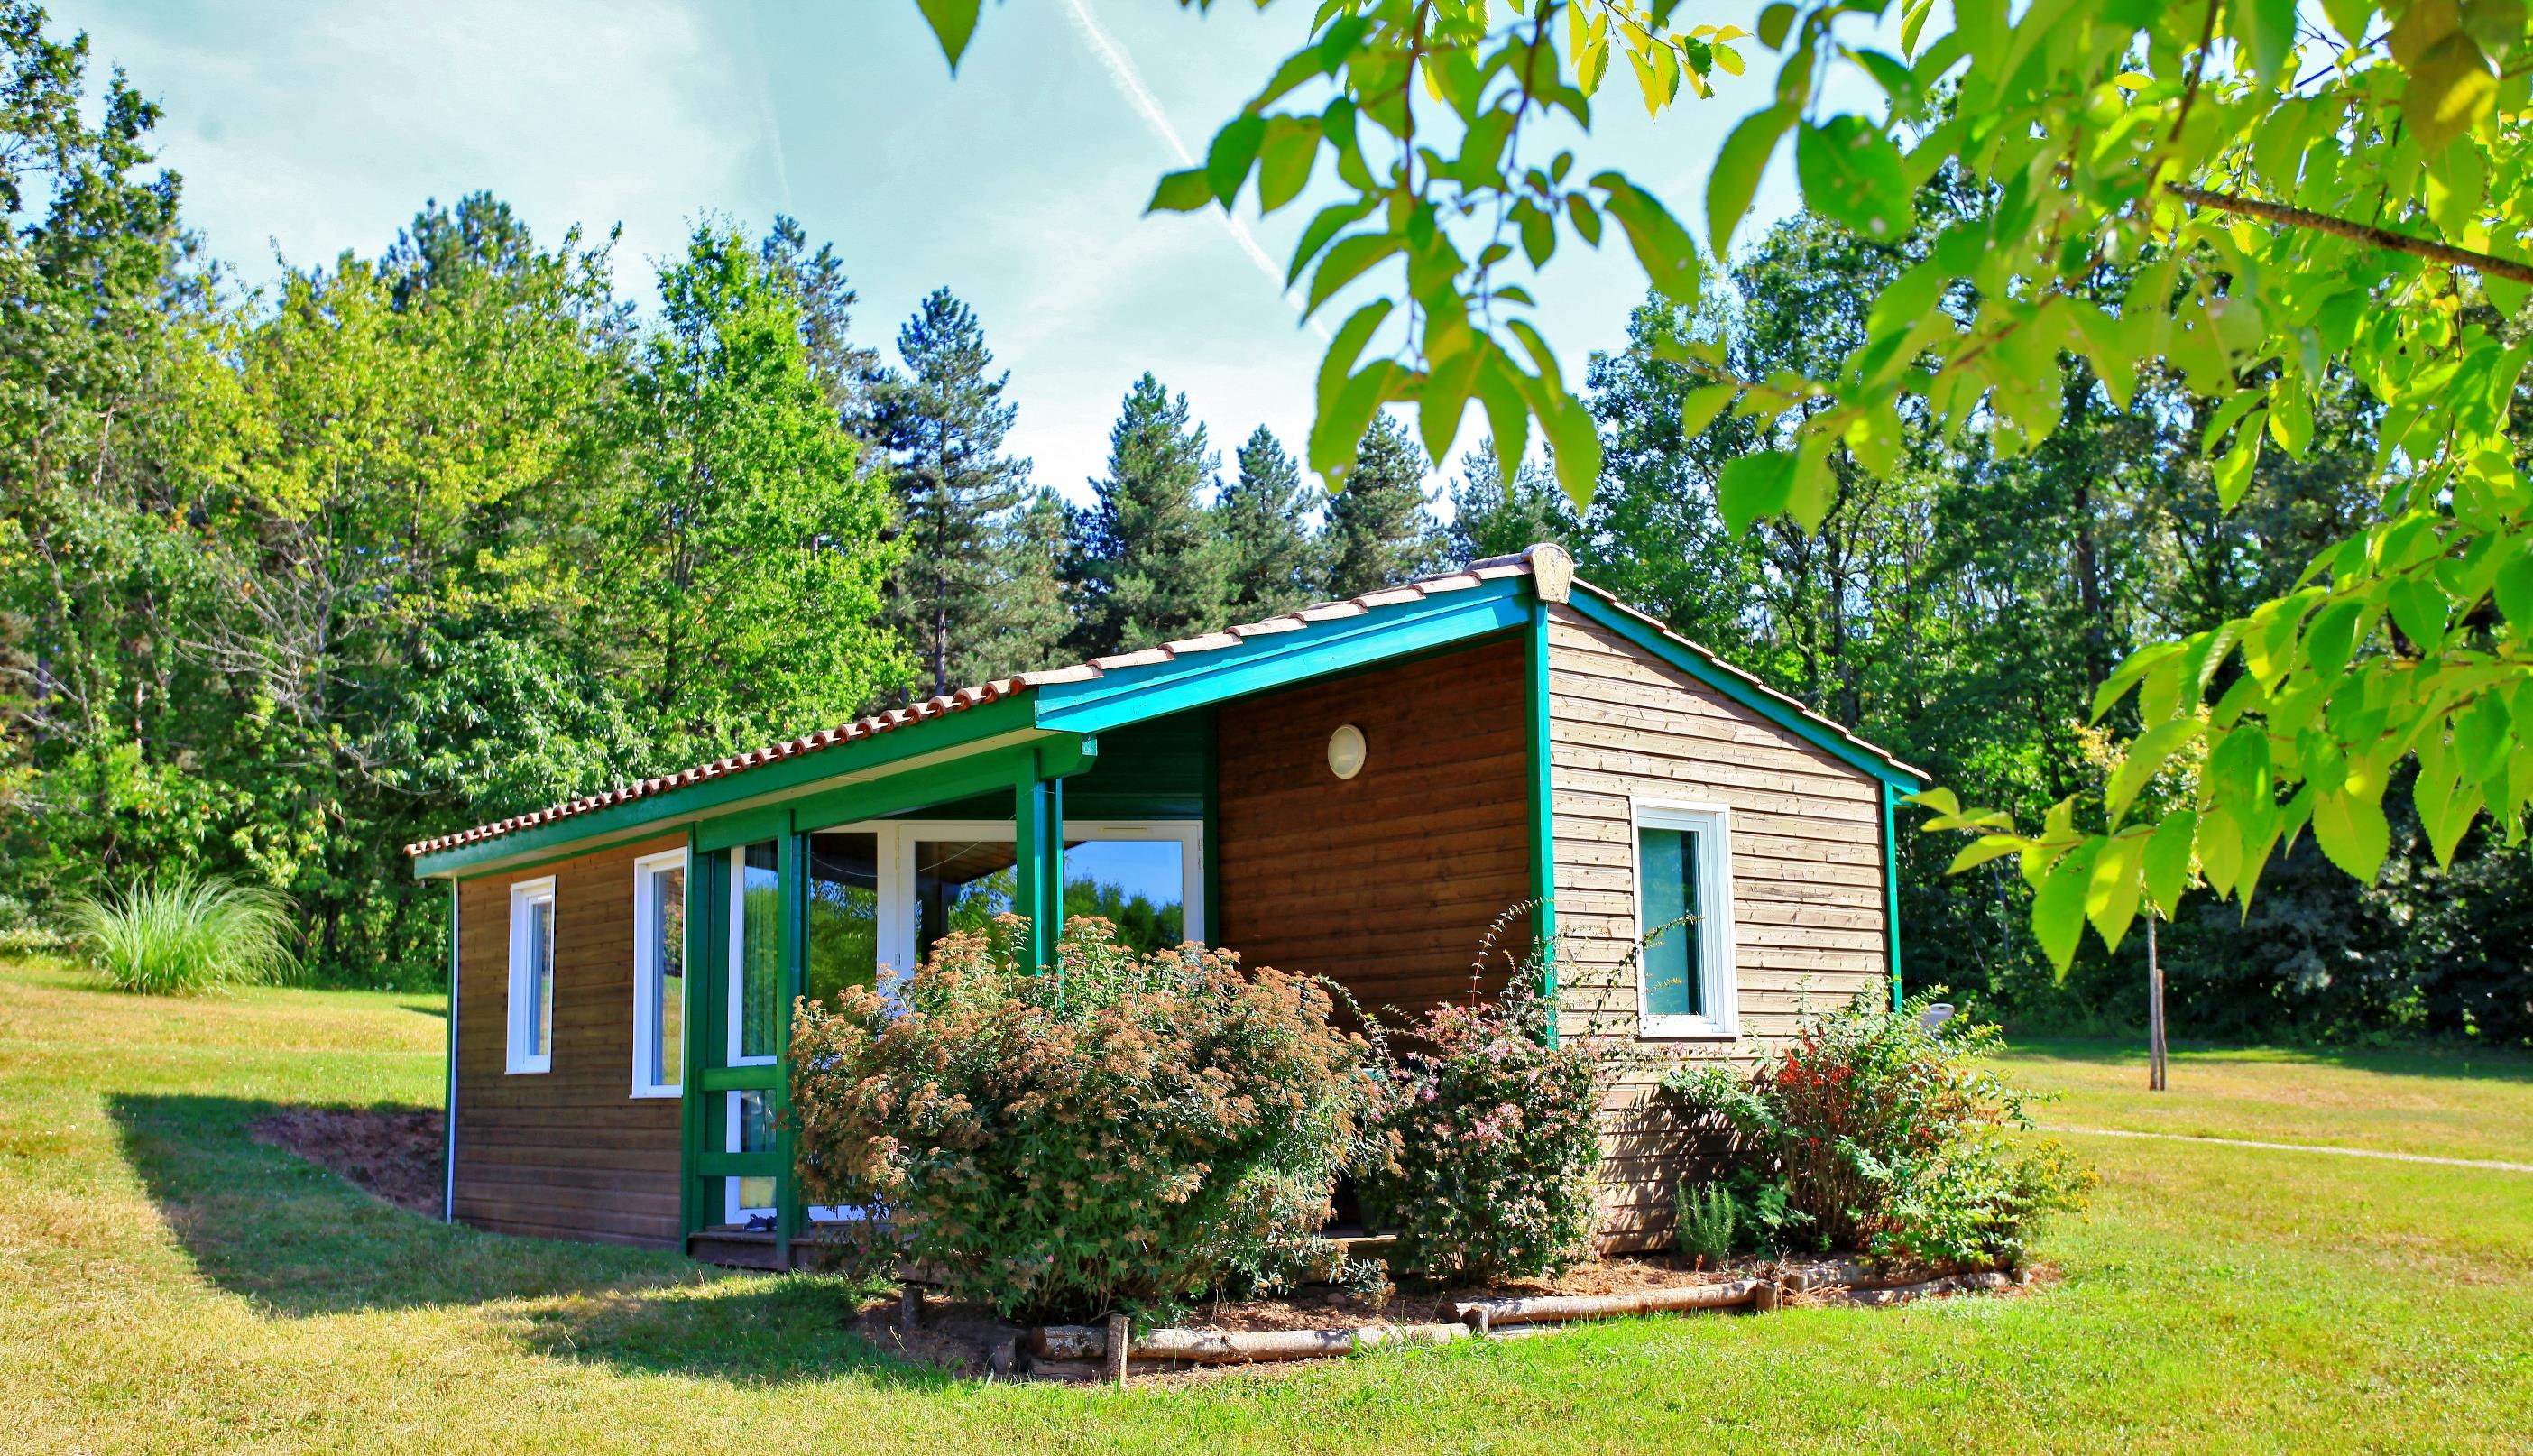 Chalet Cottage 36 m² 2 chambres - Intérieur rénové - Climatisation - TV - Barbecue - Terrasse semi-couverte